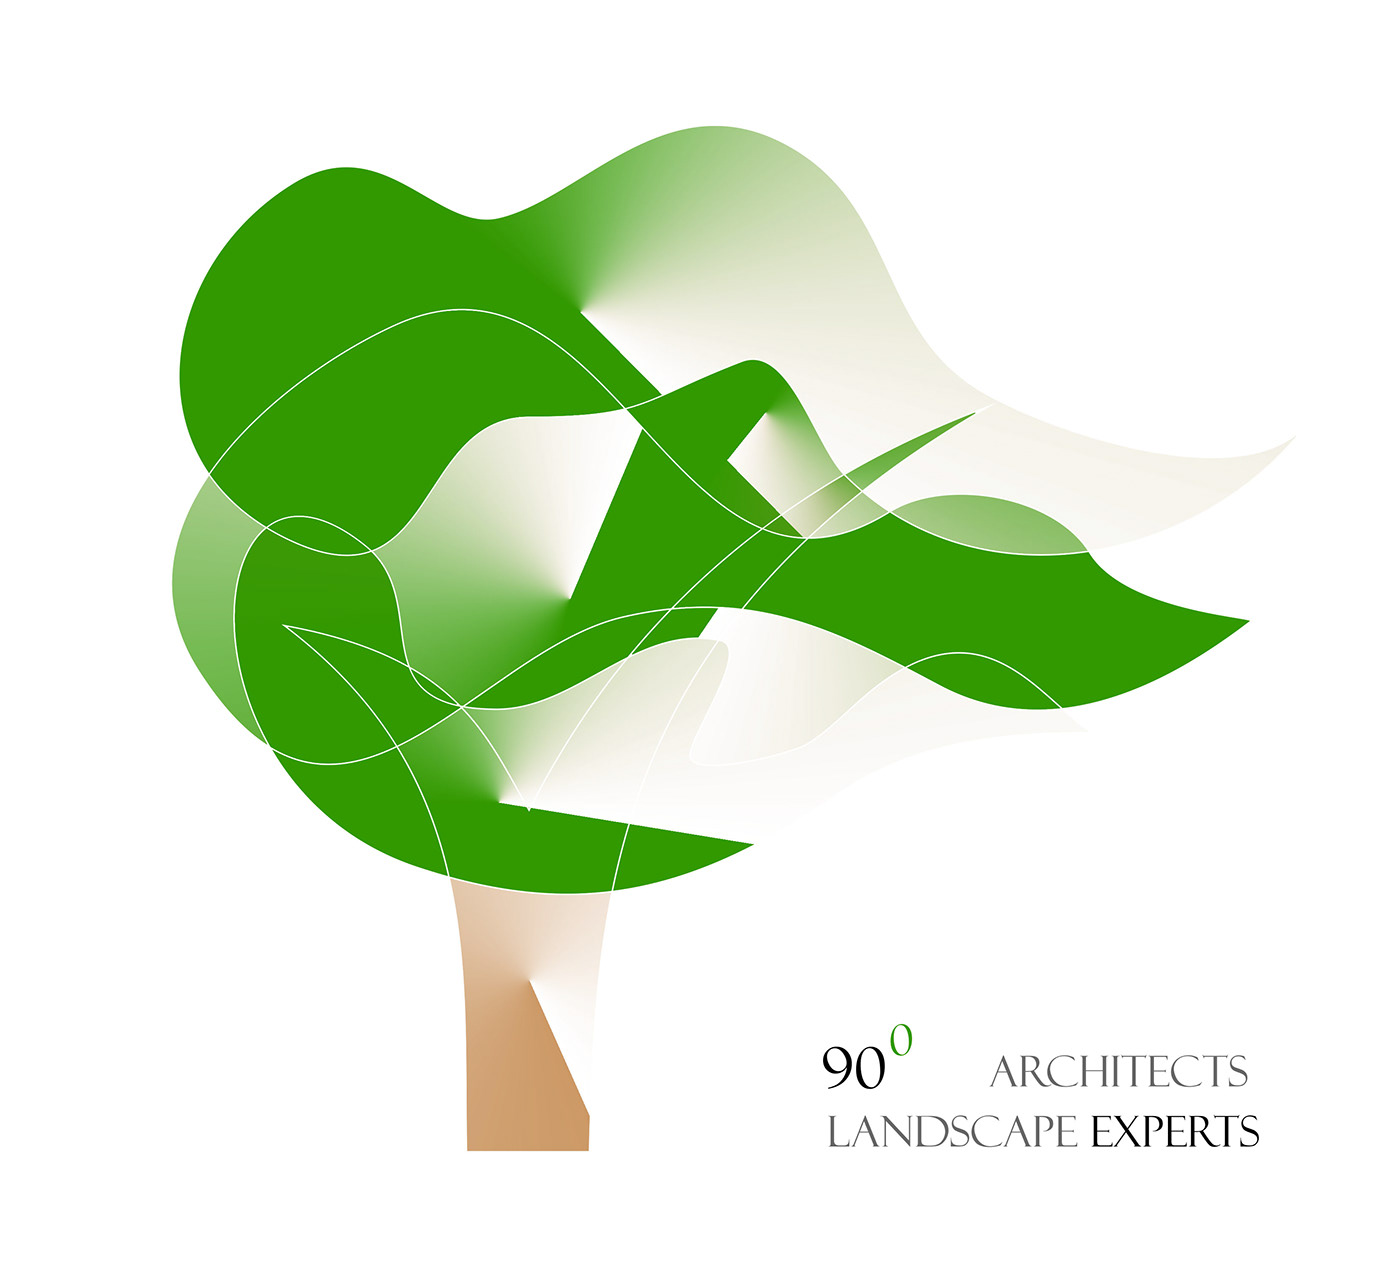 landscape designs landscape logos architects logos sidwalks landscape logos sidwalks architects logos